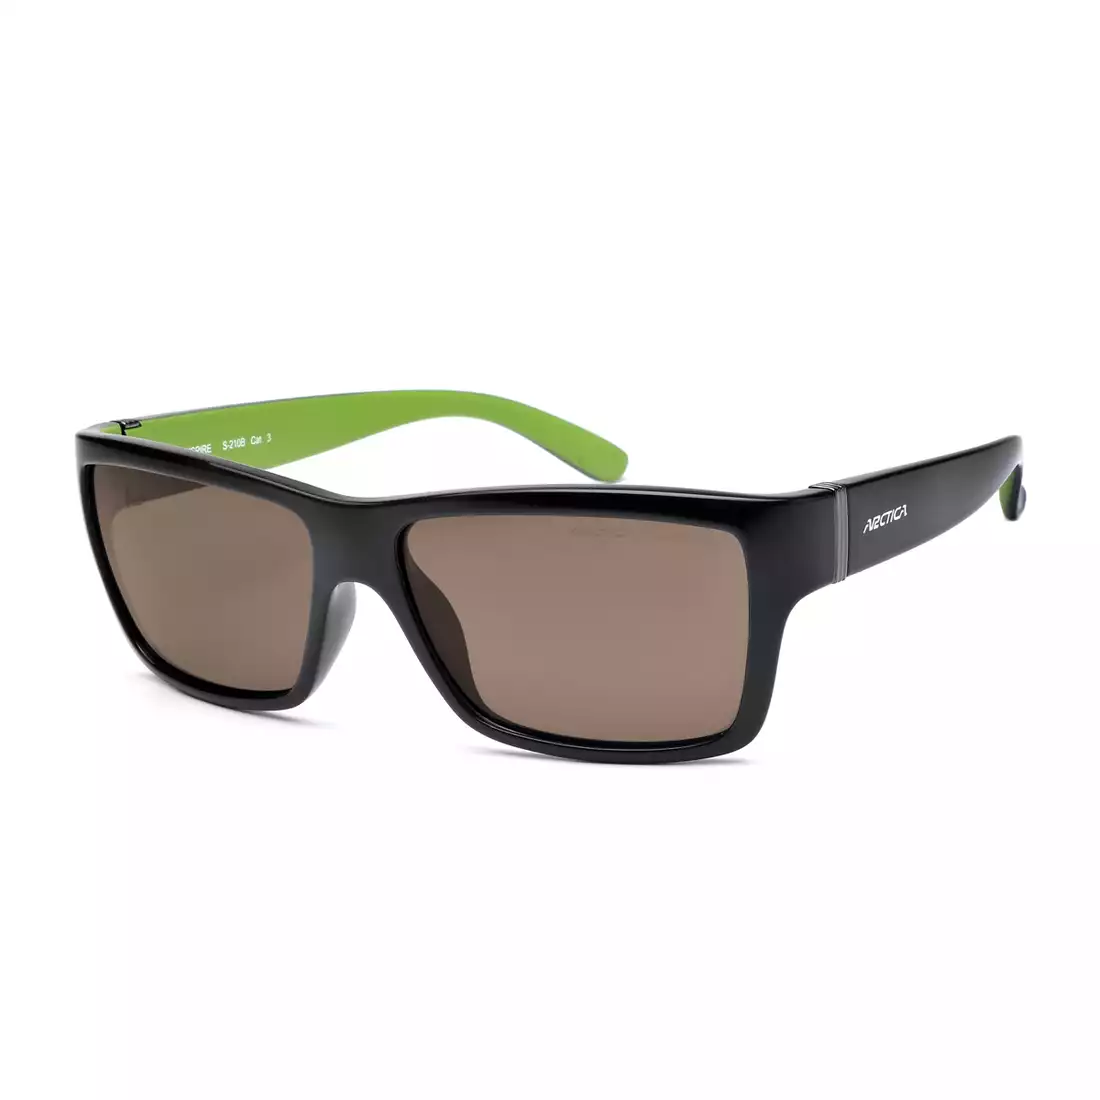 ARCTICA okulary sportowe, S 210 B